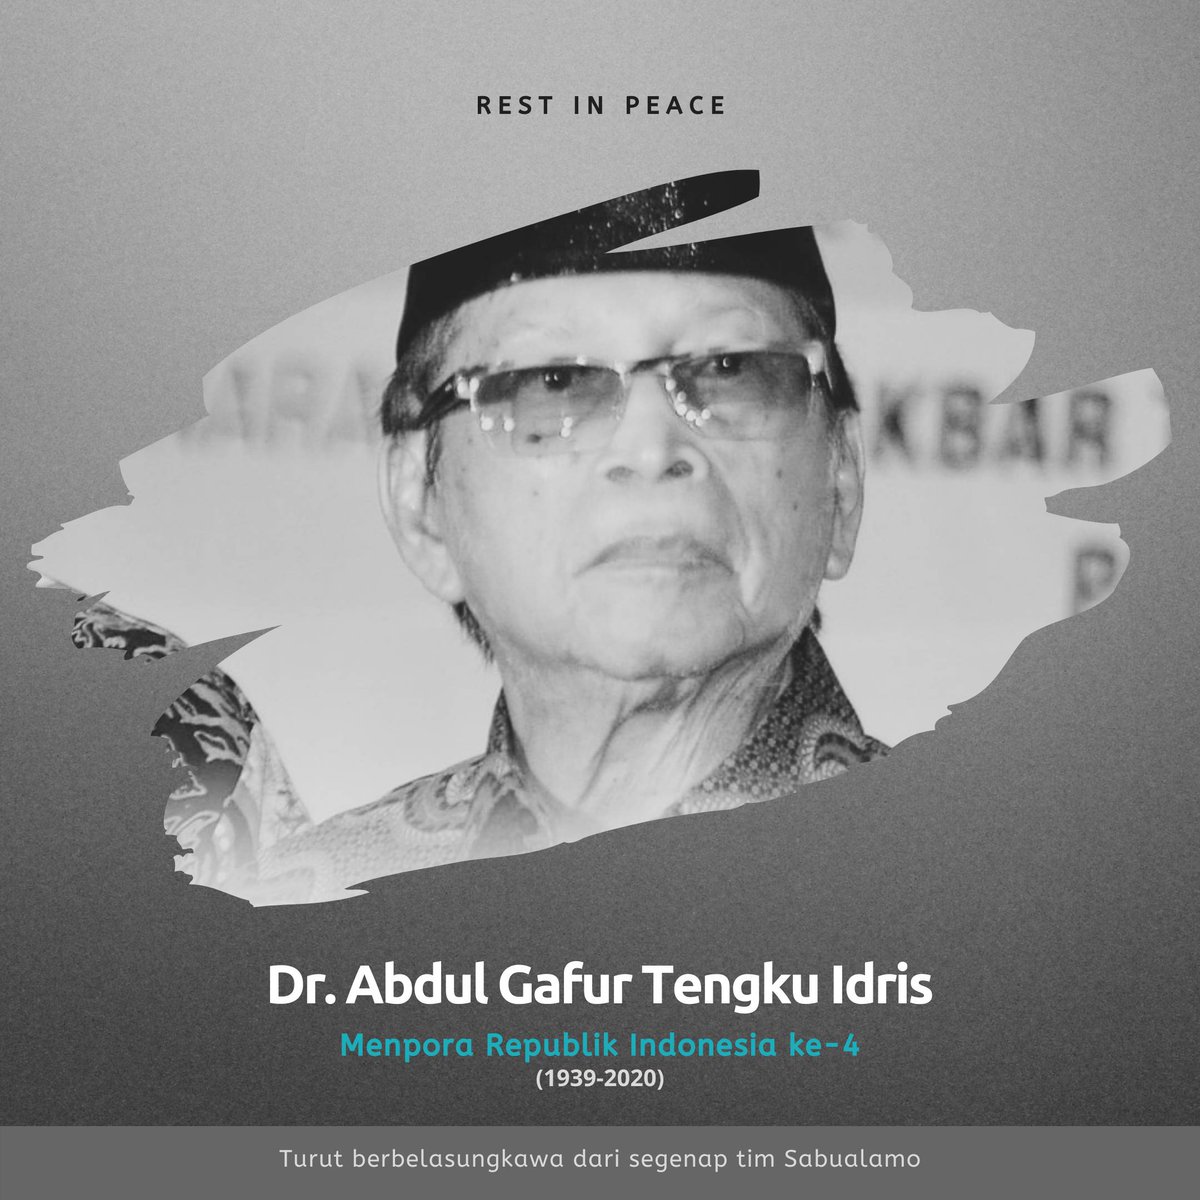 Telah berpulang dalam damai, Dr. Abdul Gafur di RSPAD Gatot Subroto Jakarta pada Jumat (4/9) pukul 6.35 WIB. Putra Maluku Utara ini pernah menjabat sebagai Menpora ke-4 (1978-1988), Ketua Dewa Pertimbangan Agung (1988-1997), serta Wakil Ketua MPR RI 1997-1999). #MolokuToday